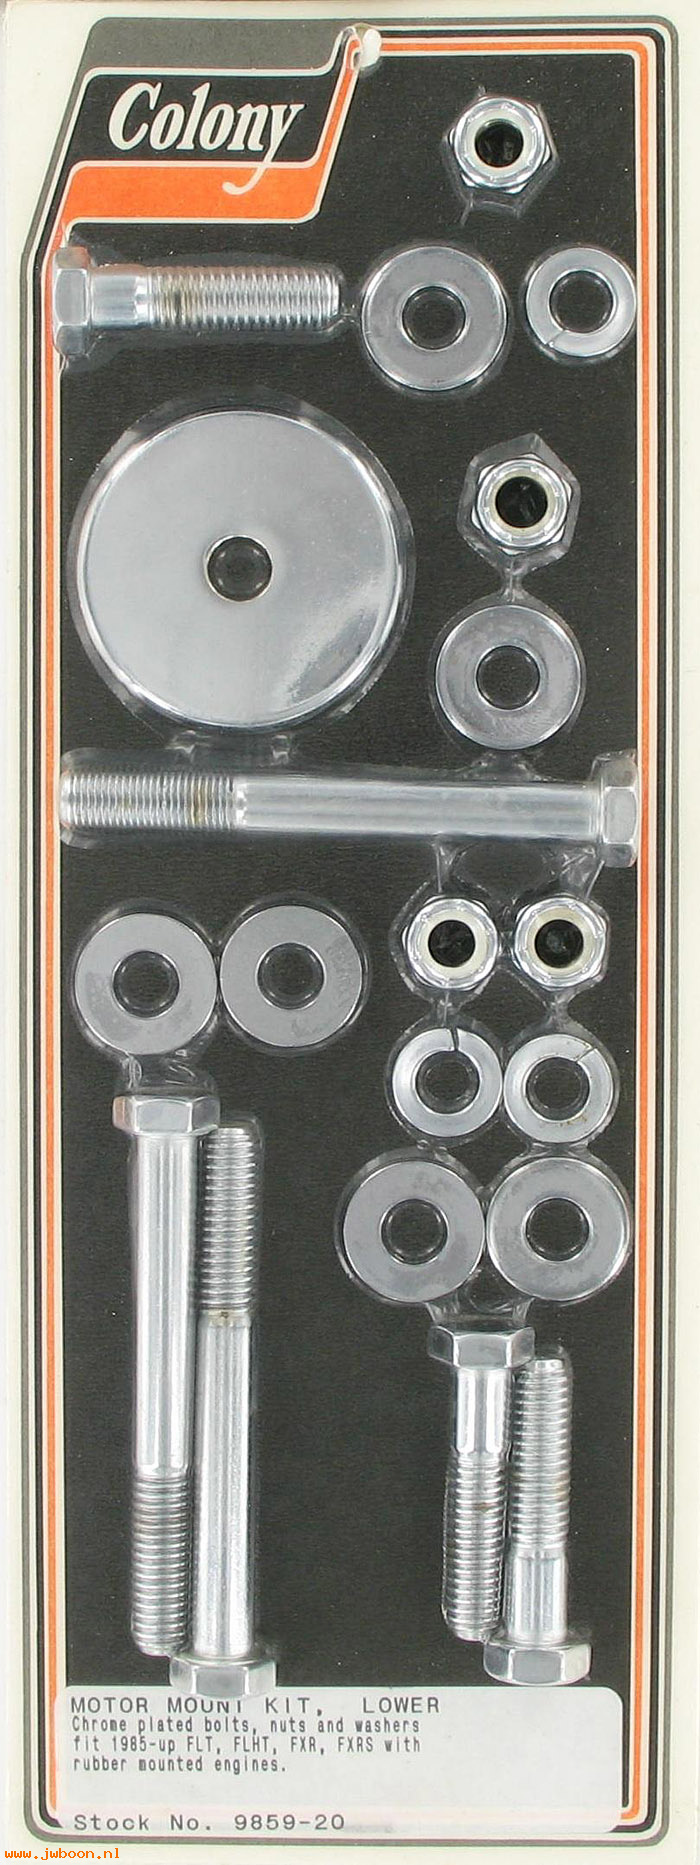 C 9859-20 (): Motor mount kit, lower - FLT, FLHT, FXR, FXRS '88-'06, rubber mt